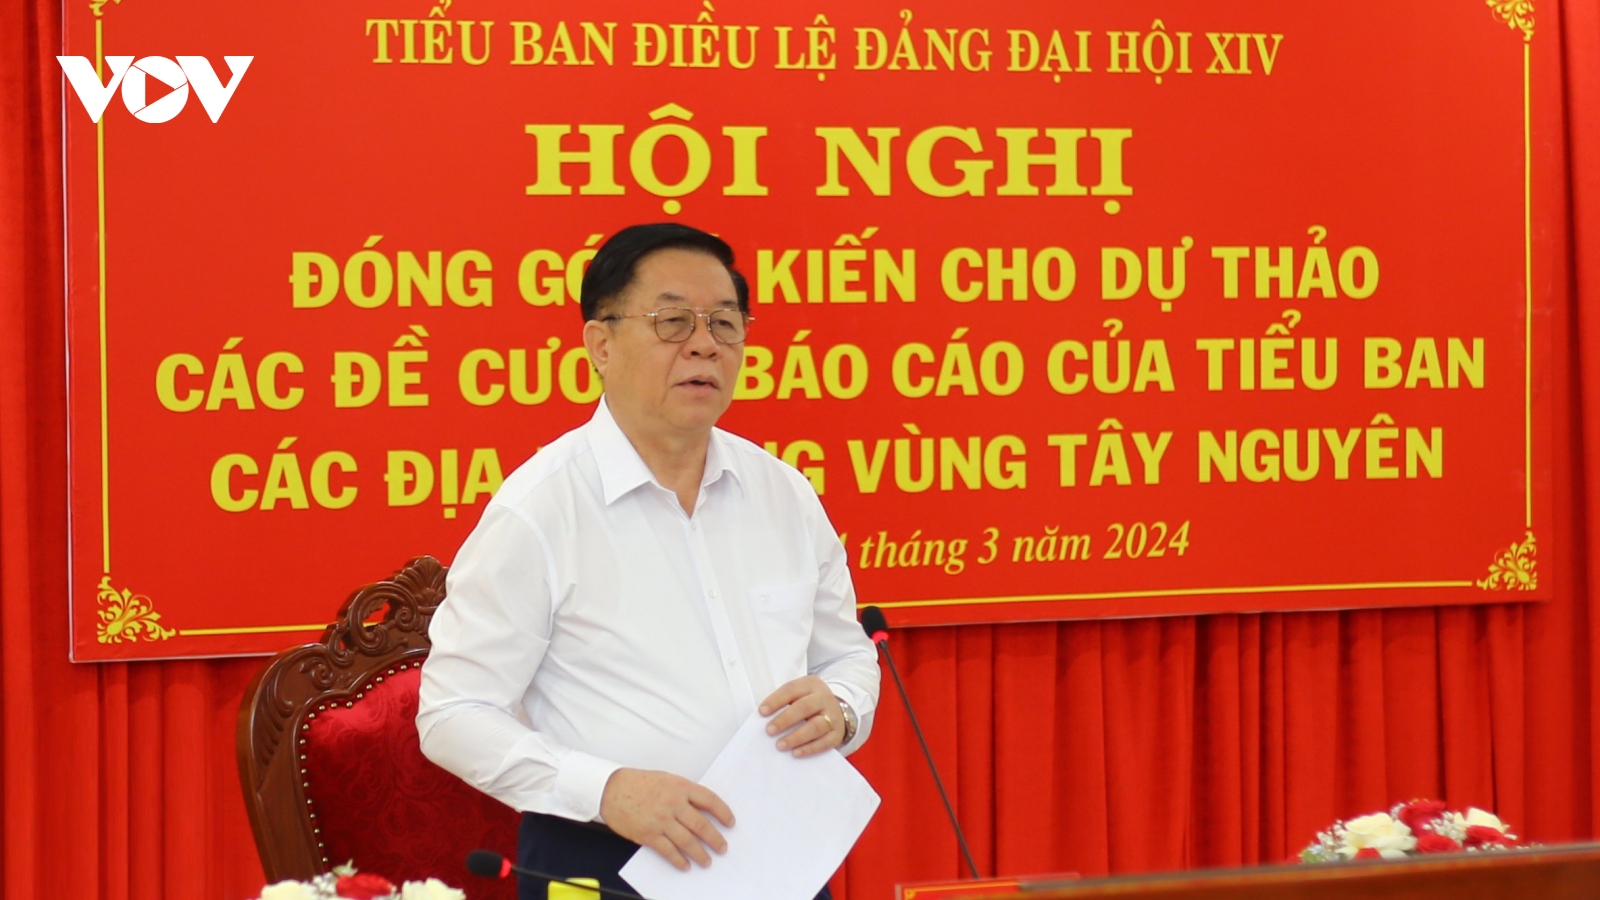 Tiểu ban Điều lệ Đảng Đại hội XIV làm việc với lãnh đạo các tỉnh Tây Nguyên